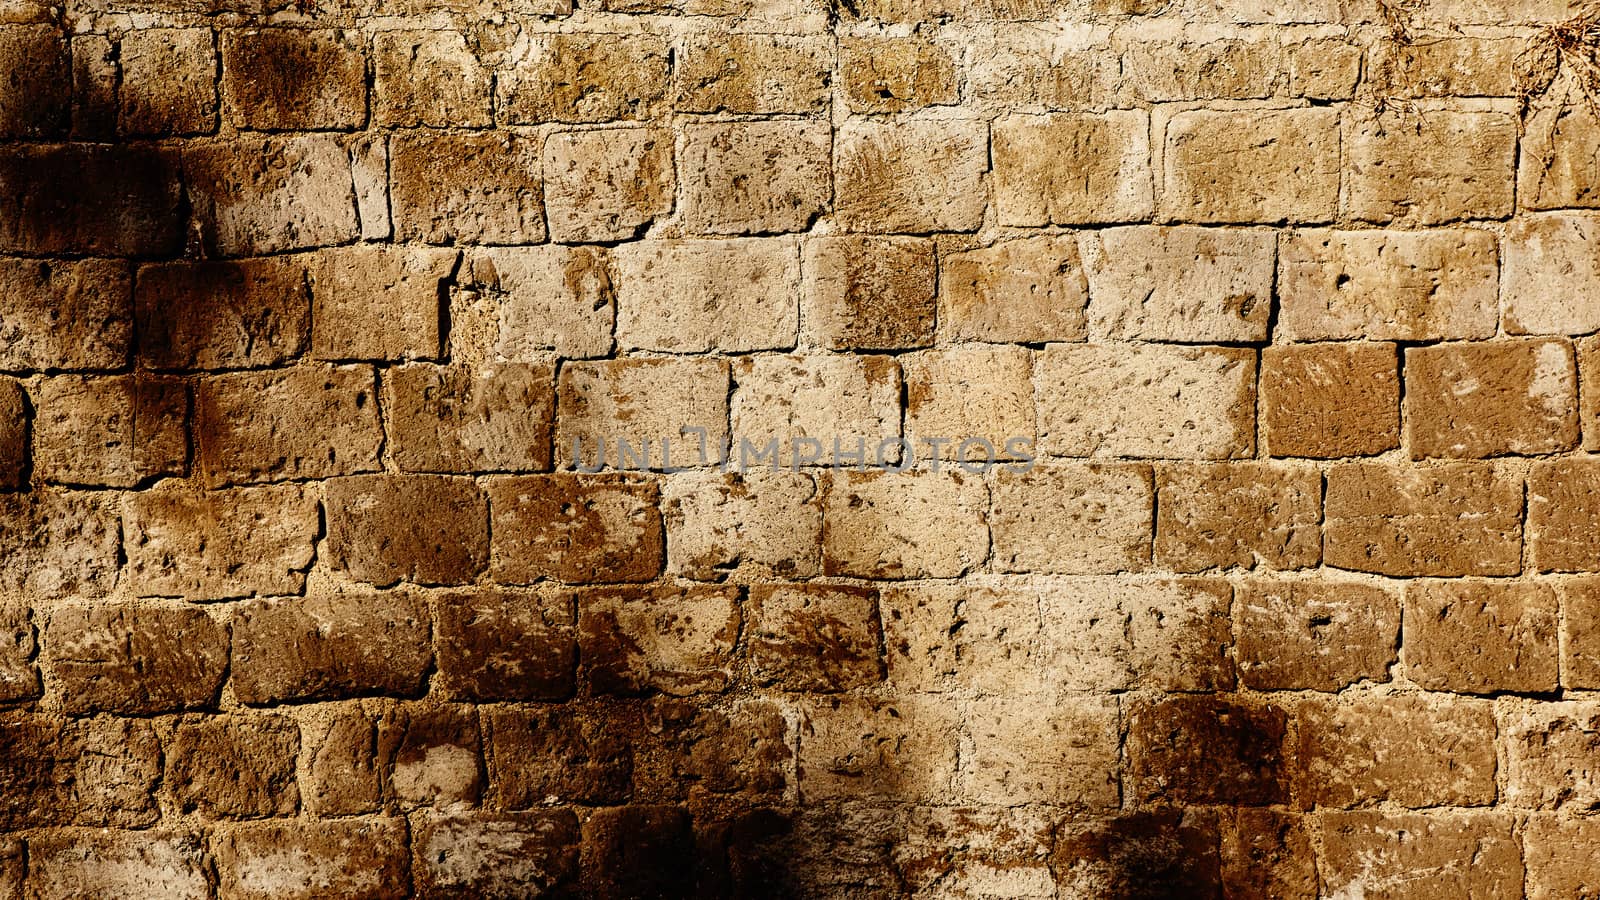 stone wall texture photo by sarymsakov